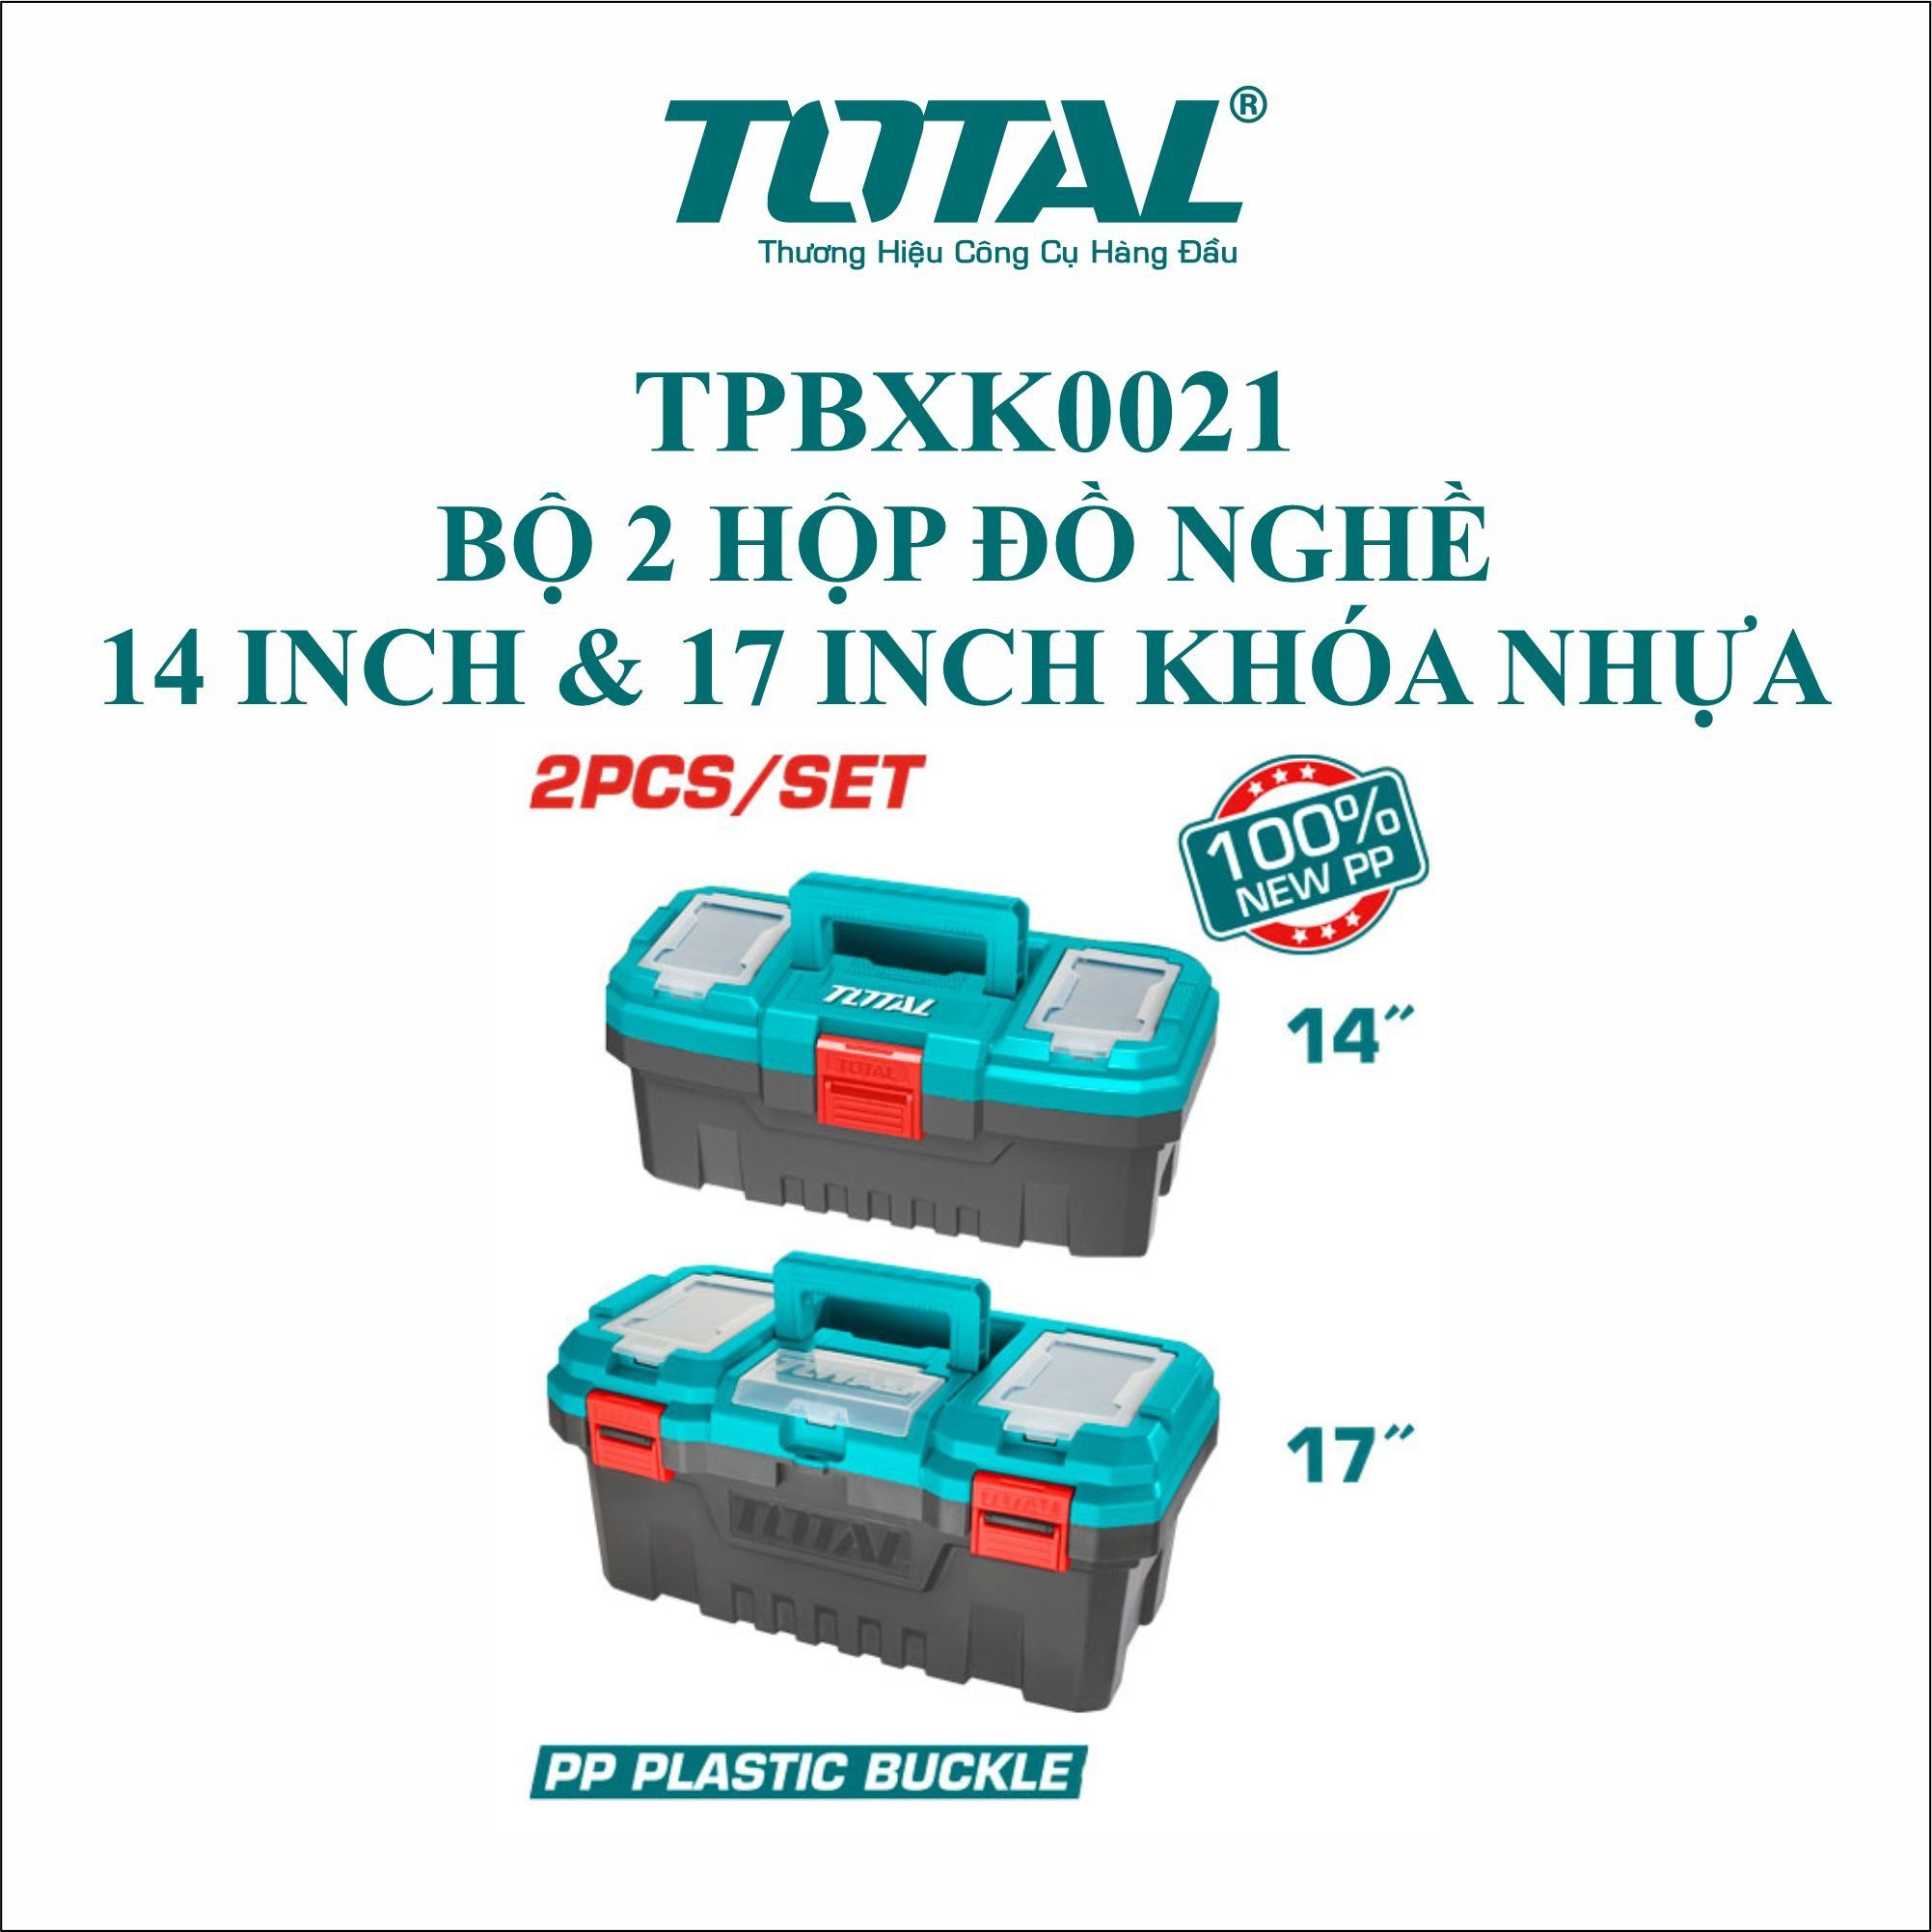  Bộ 2 thùng đựng đồ nghề Total 14 và 17 inch khóa nhựa Total TPBXK0021 